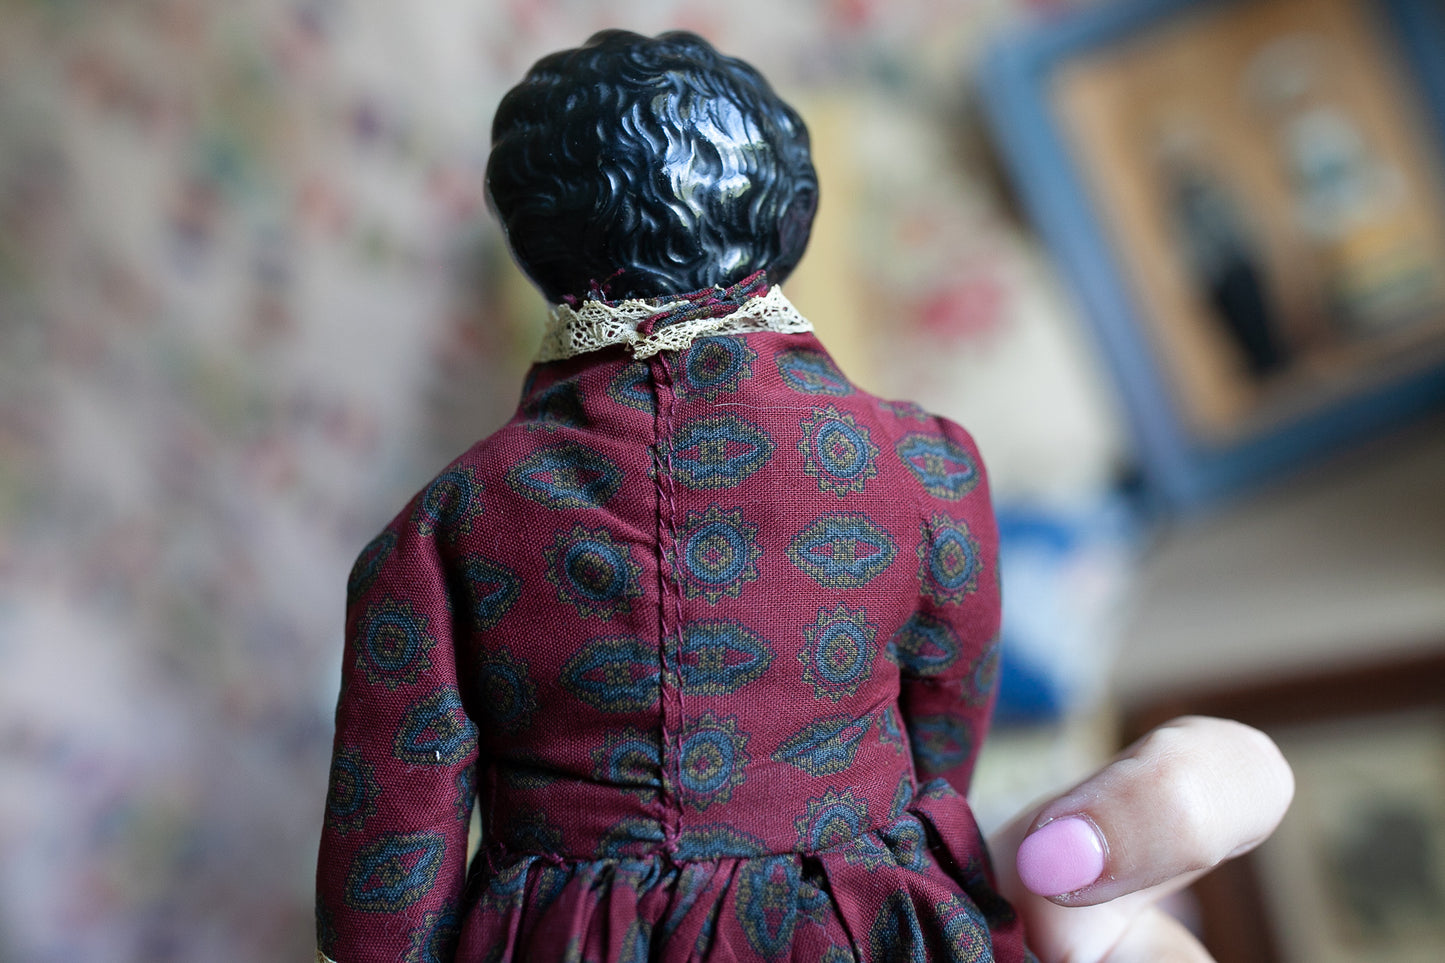 Antique Porcelain Head Doll